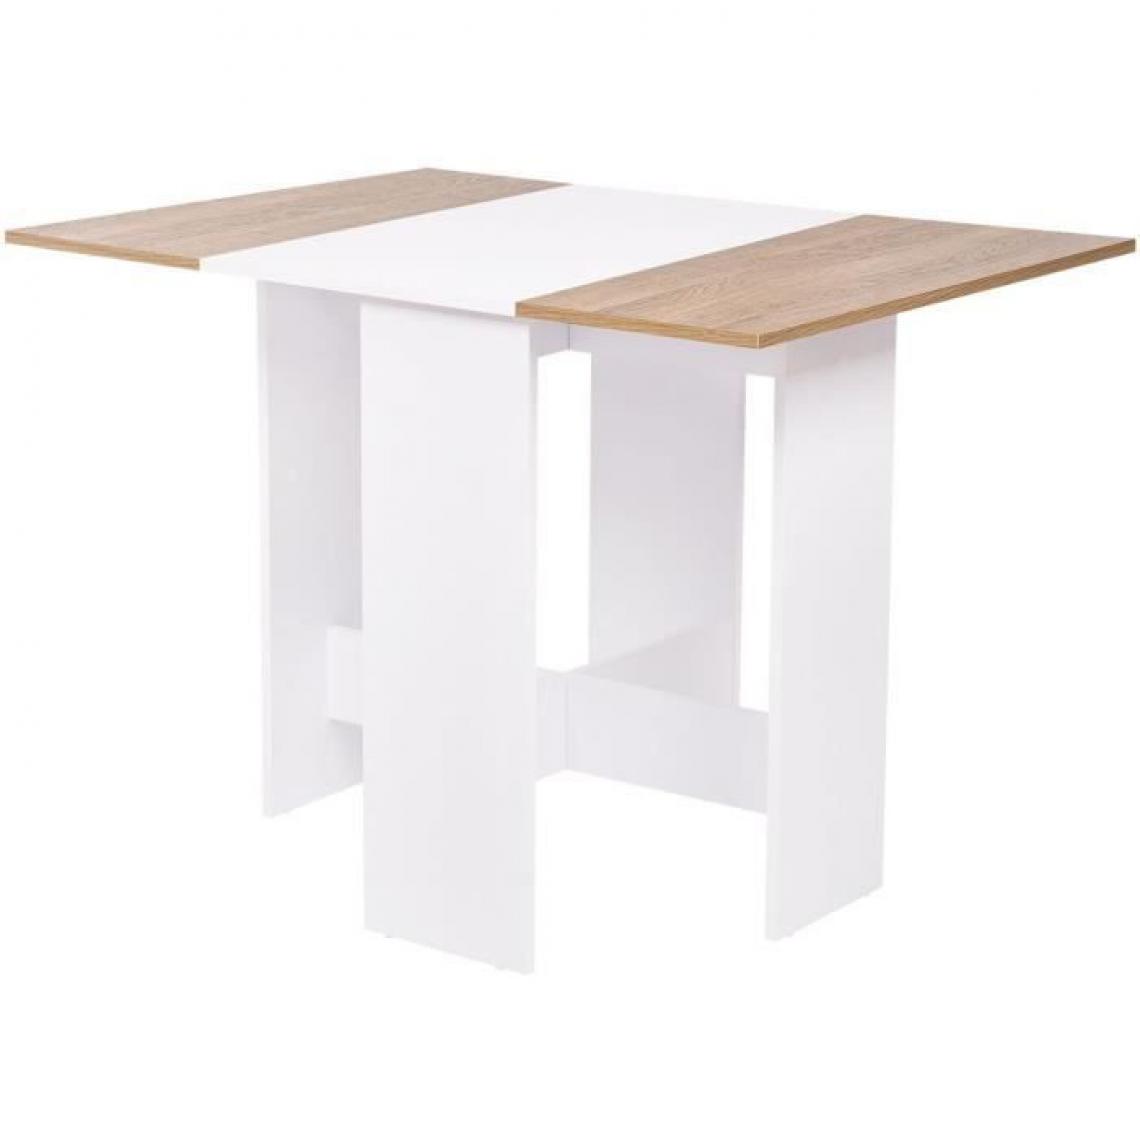 Cstore - Table à manger pliable VARDA - En panneaux de particules avec décor papier - Blanc et chêne - Tables à manger